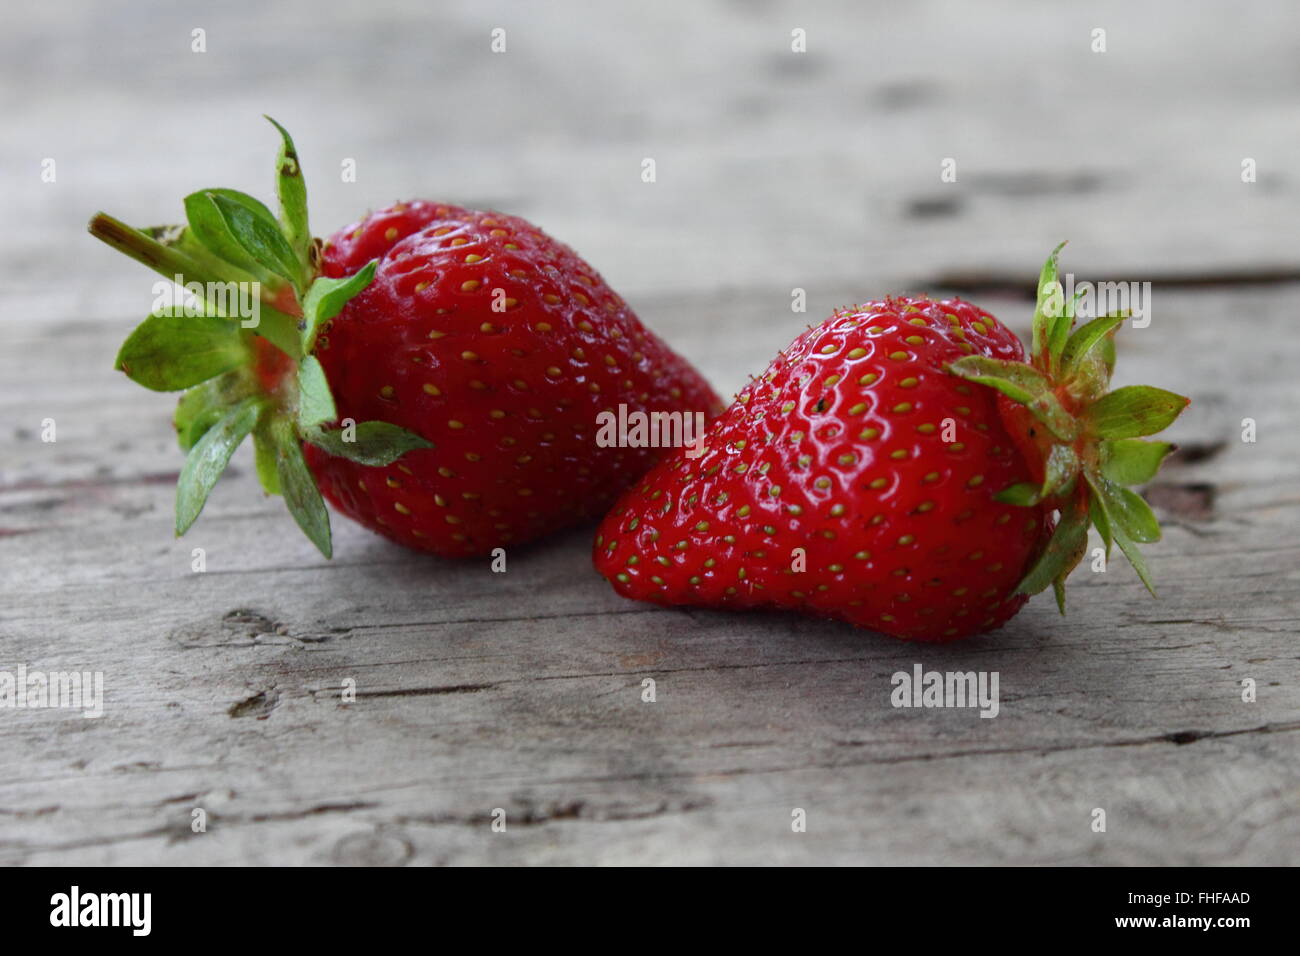 Two fresh strawberries Stock Photo